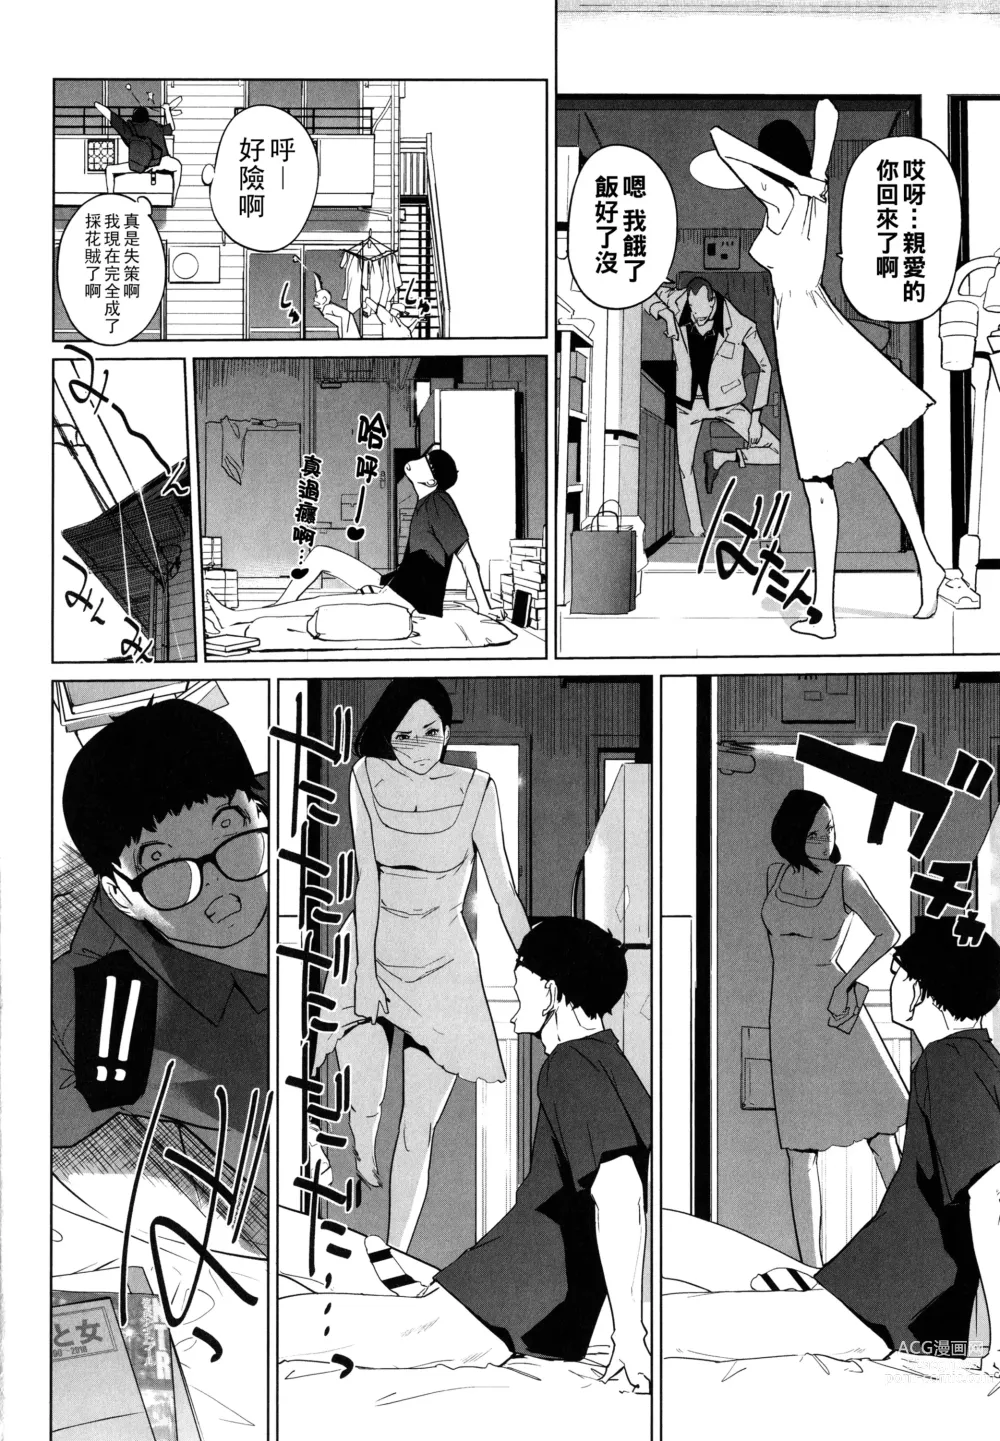 Page 124 of manga Natsu no Su